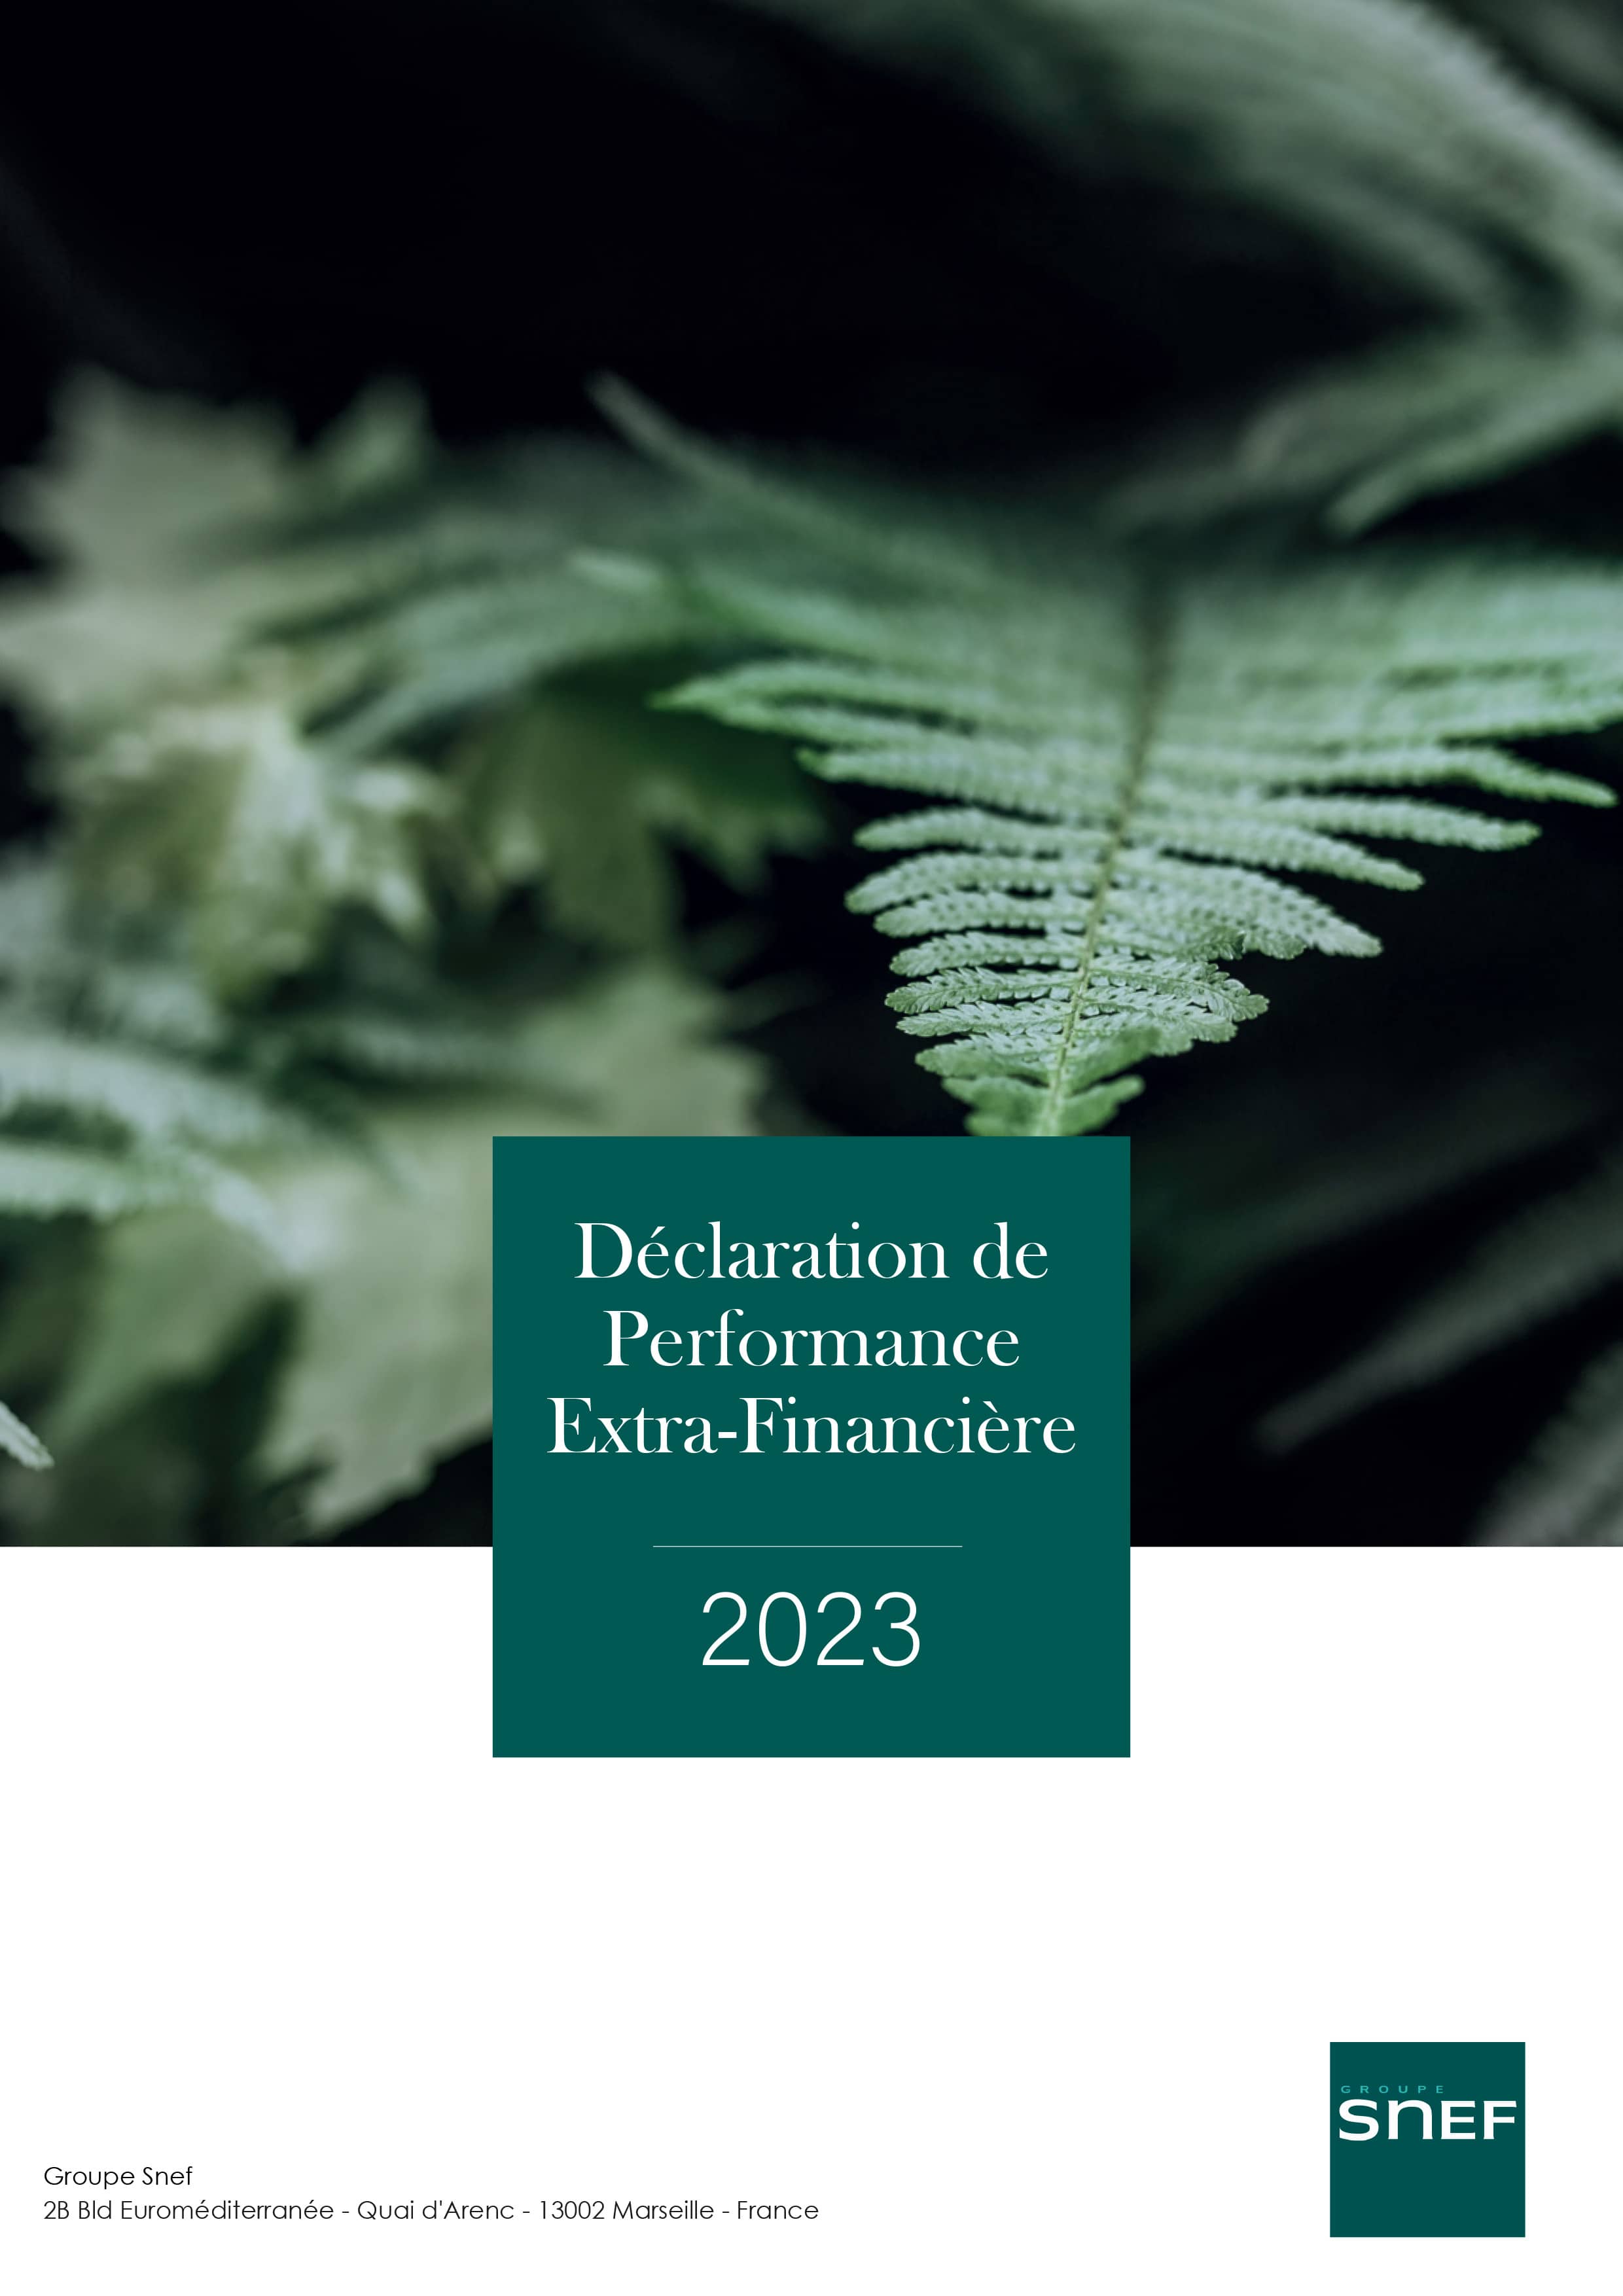 Déclaration de Performance Extra-Financière 2023